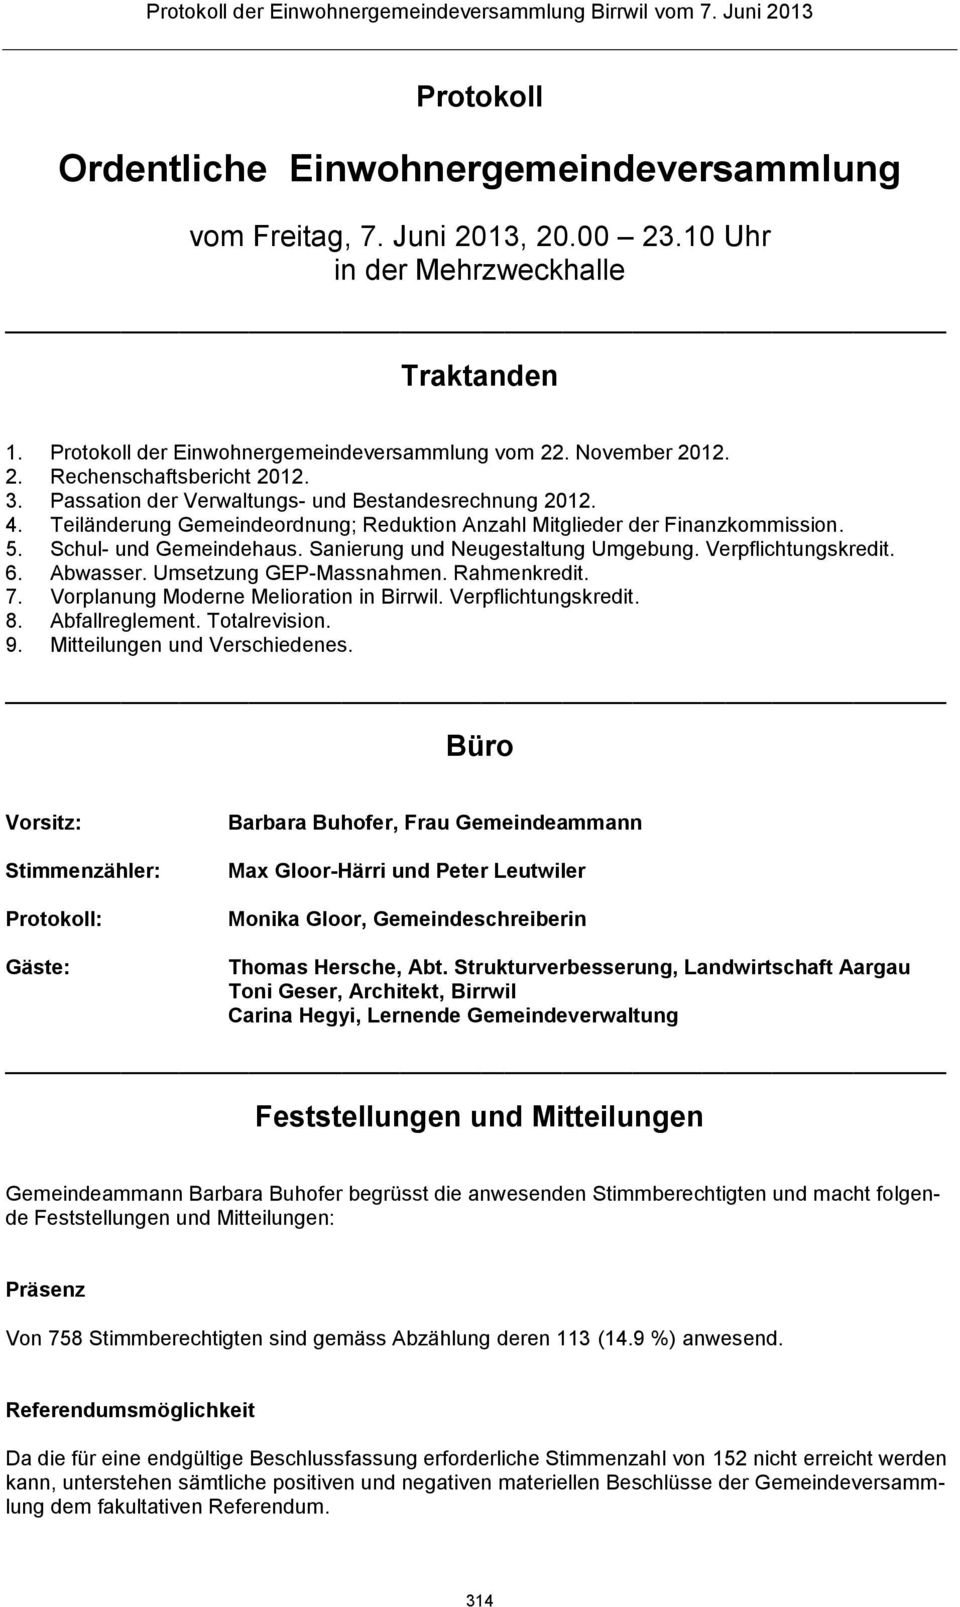 Sanierung und Neugestaltung Umgebung. Verpflichtungskredit. 6. Abwasser. Umsetzung GEP-Massnahmen. Rahmenkredit. 7. Vorplanung Moderne Melioration in Birrwil. Verpflichtungskredit. 8. Abfallreglement.